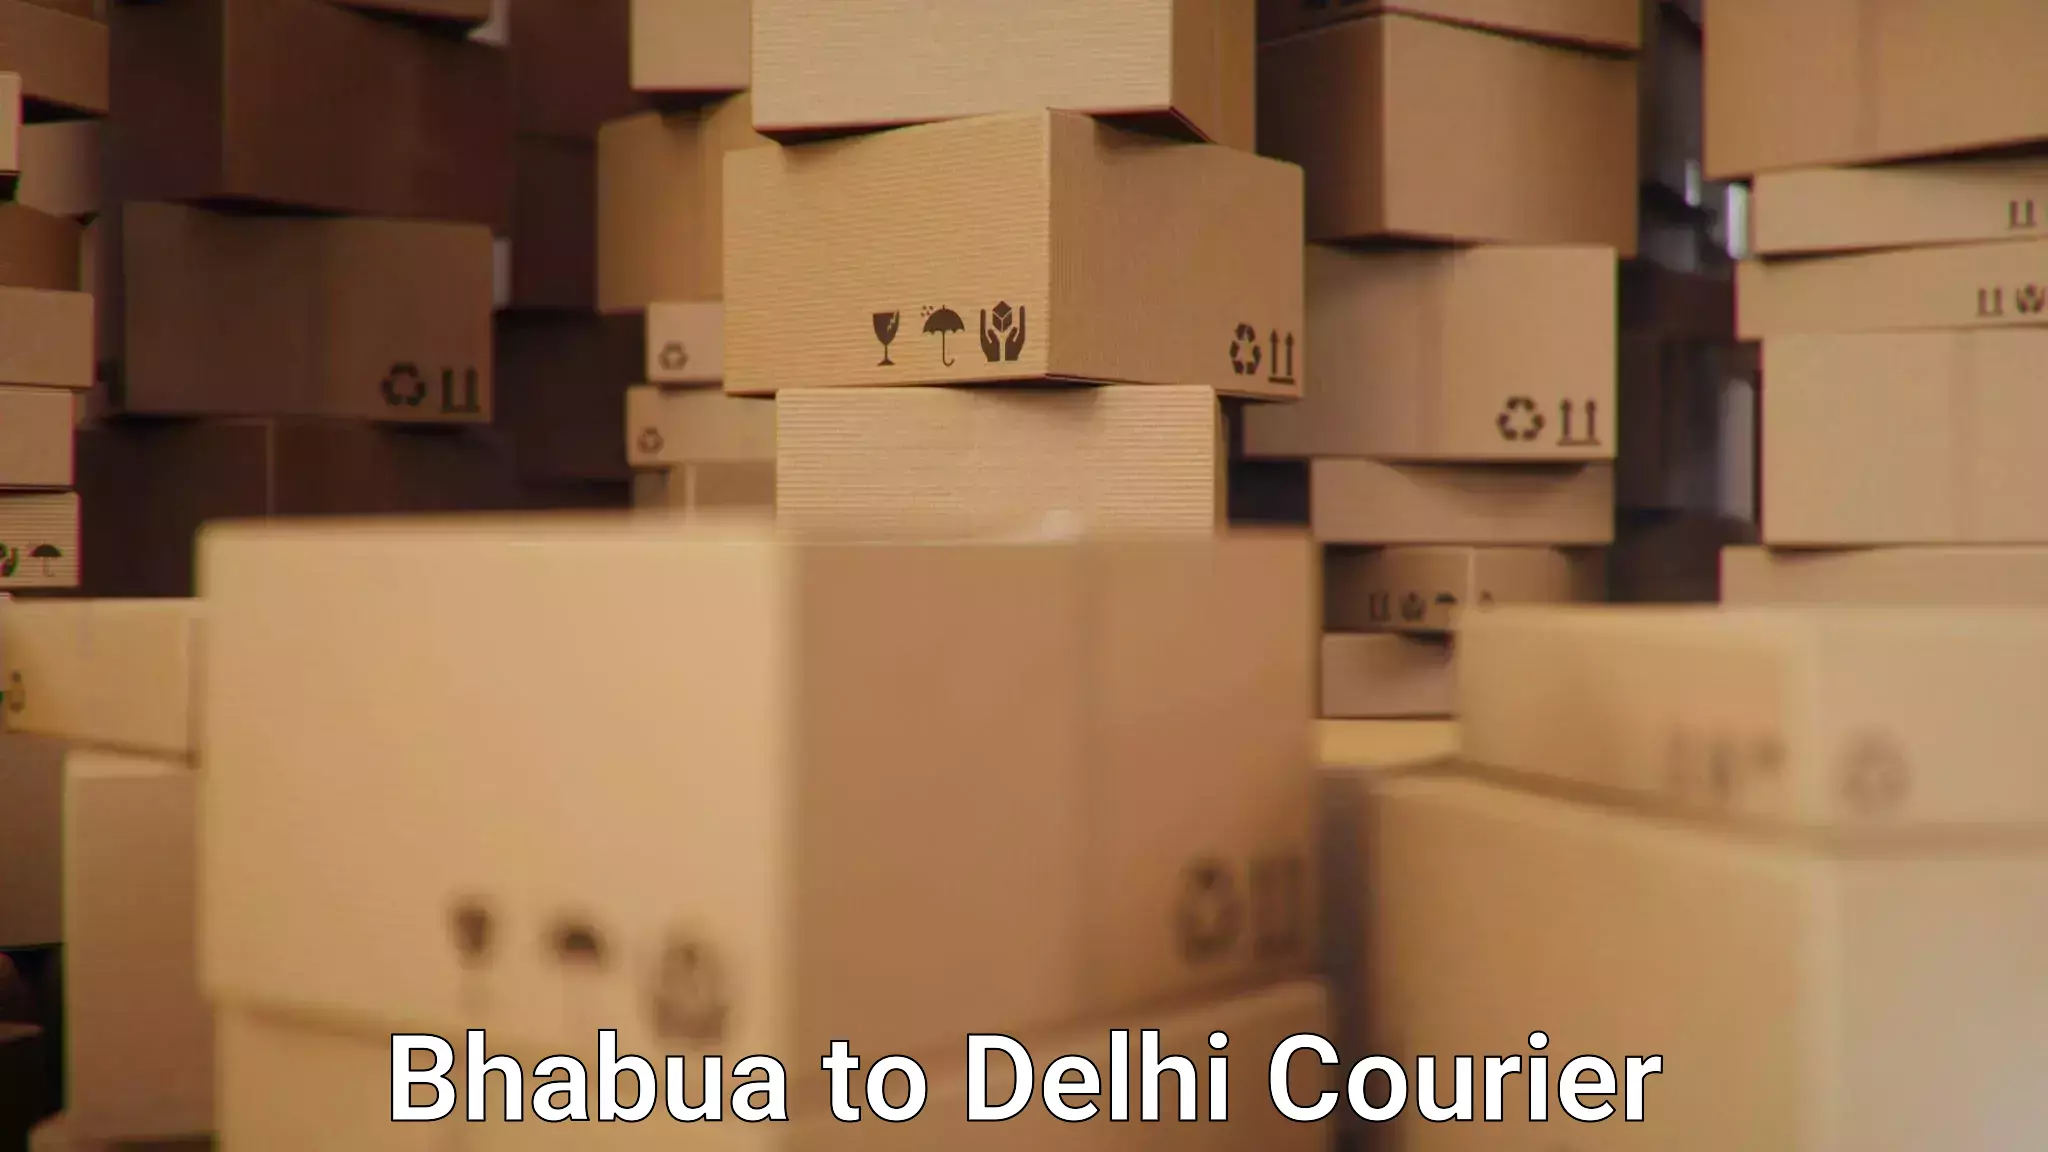 Tailored freight services Bhabua to Jawaharlal Nehru University New Delhi